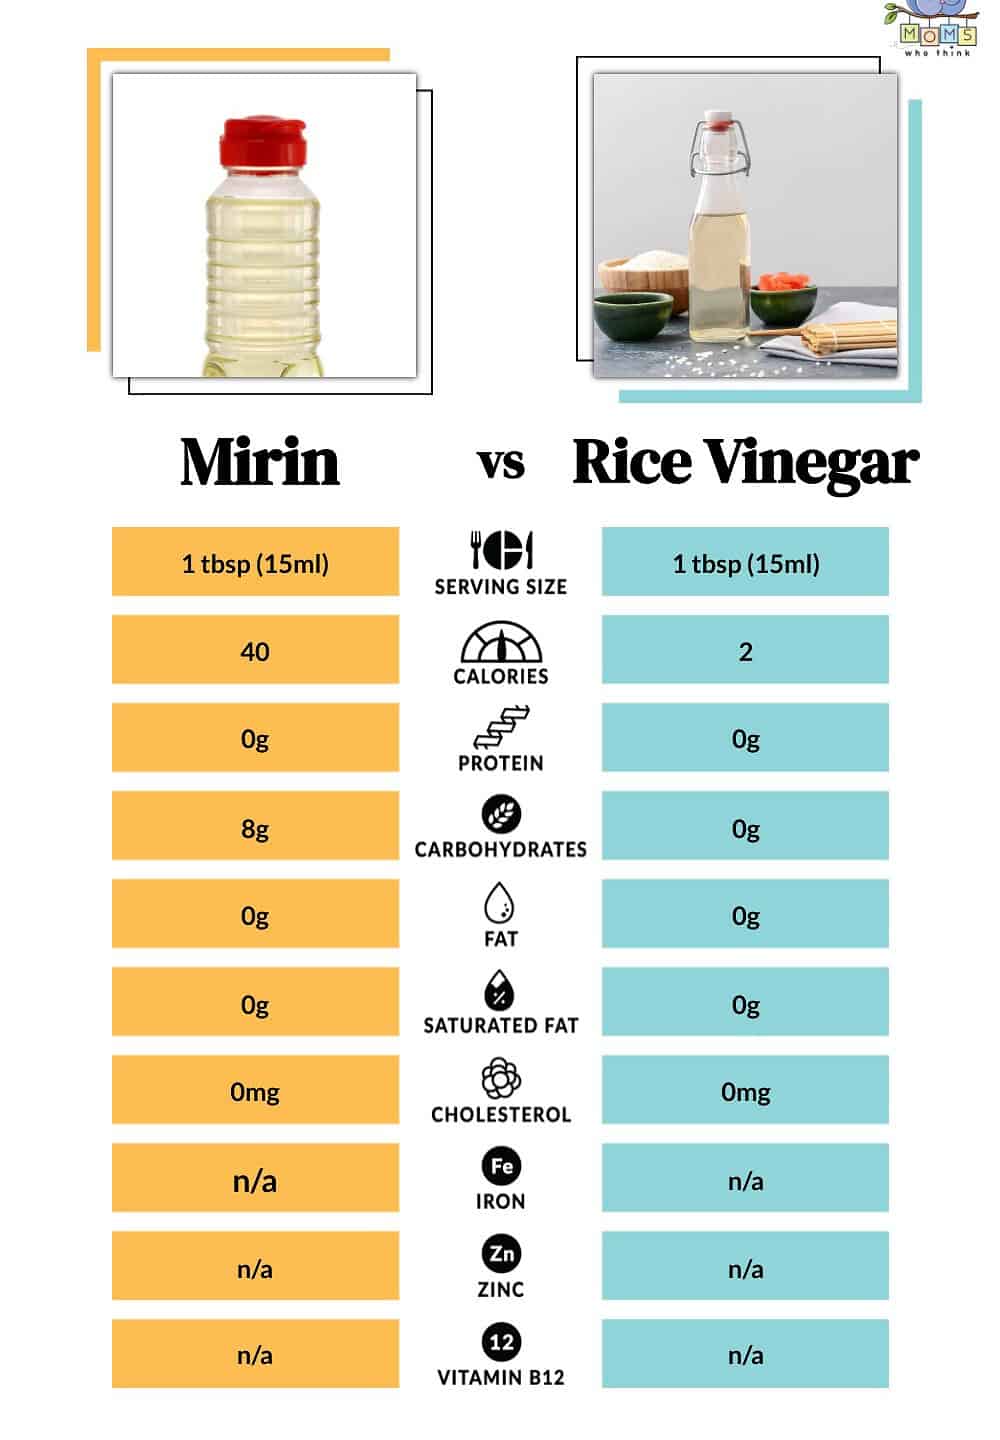 Mirin vs Rice Vinegar Nutritional Facts